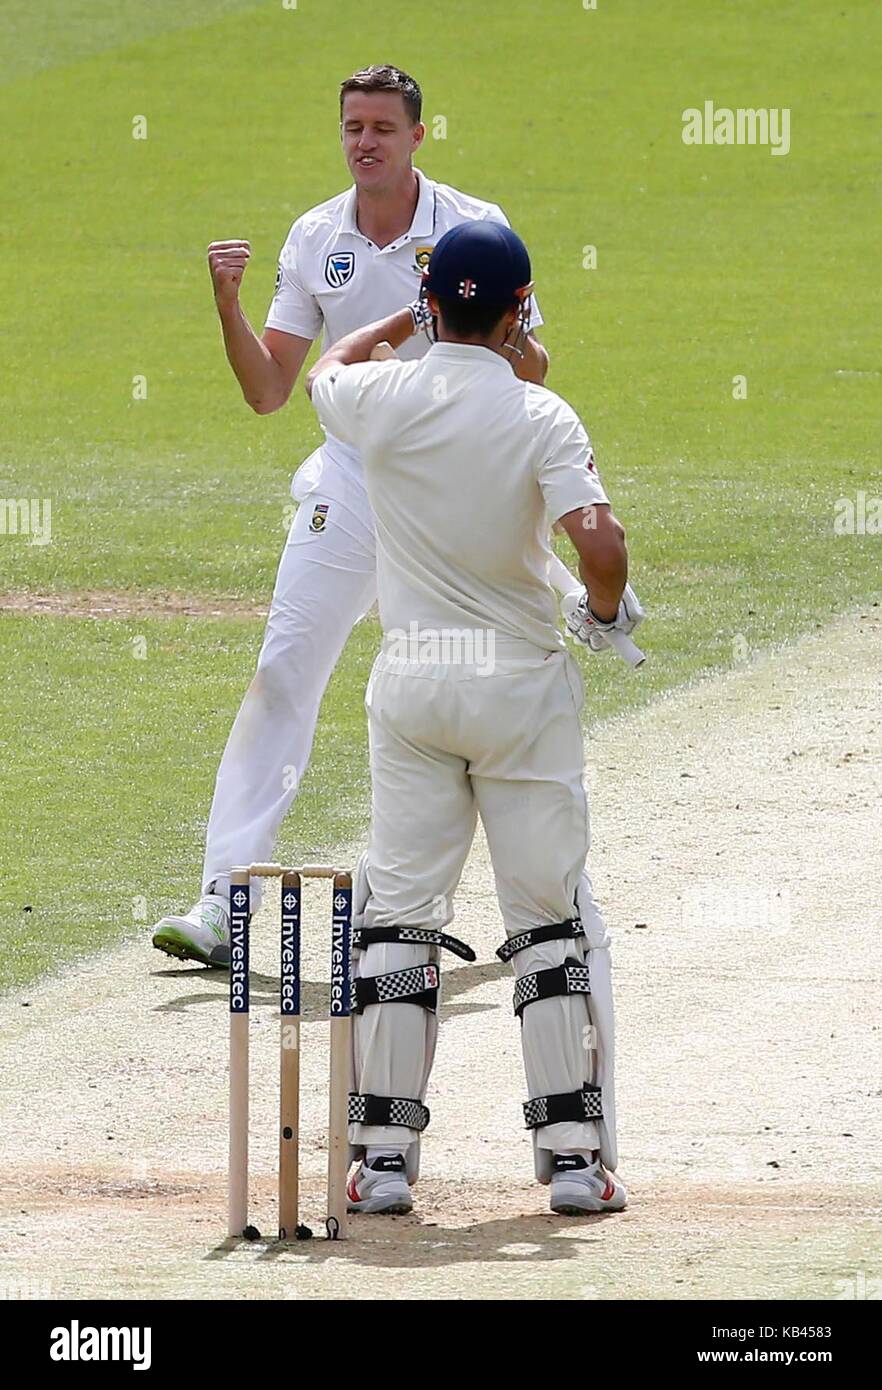 Morne Morkel d'Afrique du Sud célèbre en tenant le wicket de Alastair Cook de l'Angleterre durant la deuxième journée de la troisième Investec test match entre l'Angleterre et l'Afrique du Sud, à l'ovale à Londres. 28 juil 2017 Banque D'Images